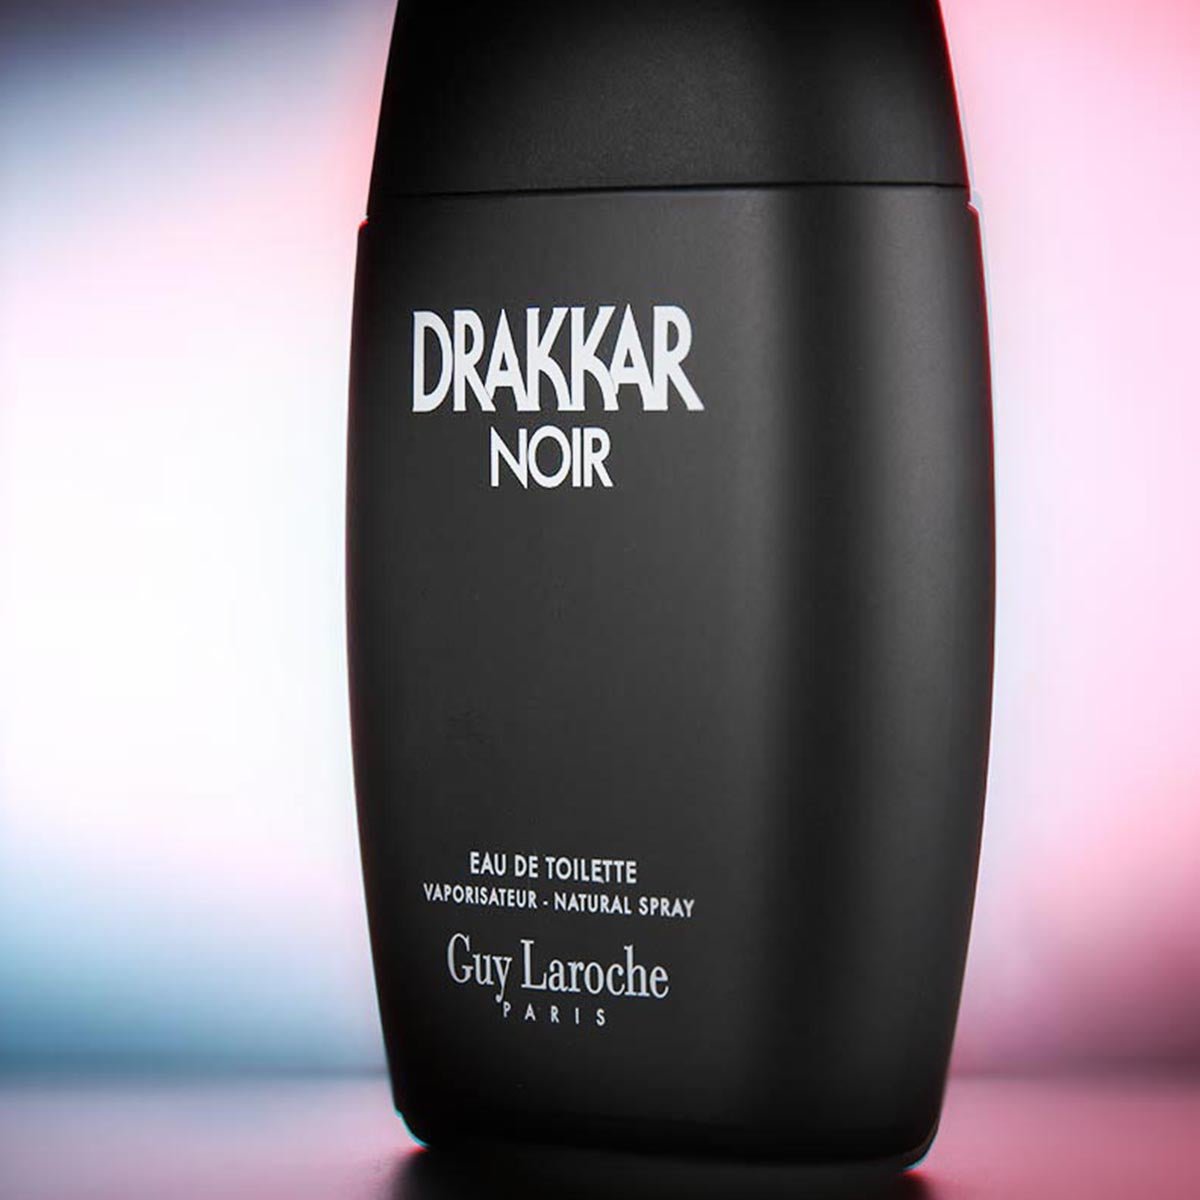 Guy Laroche Drakkar Noir EDT Gift Set | My Perfume Shop Australia